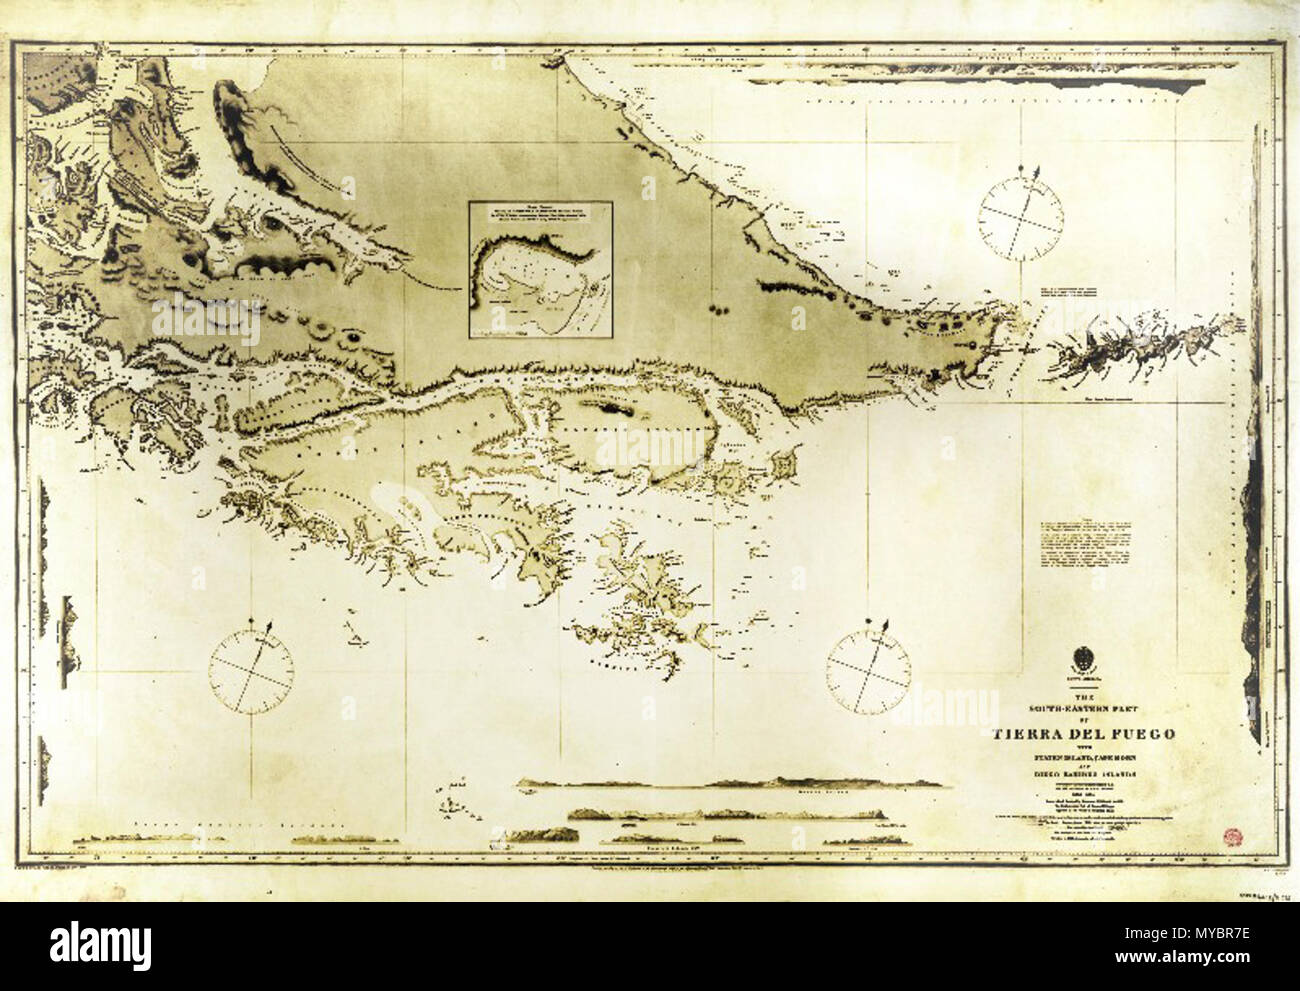 . La parte sud-orientale di Tierra del Fuego con Capo Horn, intervistati dalla H.M.S. Beagle nel 1830-34. La mappa originale è in toni di grigio; giallastro colori provengono da aumentando il contrasto prima di caricare la mappa e sono stati lasciati per una migliore visibilità map legge in basso a destra (tra gli altri): "la parte sudorientale di Tierra del Fuego con Staten Island,Capo Horn e Diego Ramirez Isole. Intervistati da capitano Robert Fitz Roy R.N. e ufficiali del H.M.S. Beagle. 1830-1834", a seconda della destinazione d'uso, questa mappa in una risoluzione superiore potrebbe essere ottenuta dalla sorgente o uplo Foto Stock